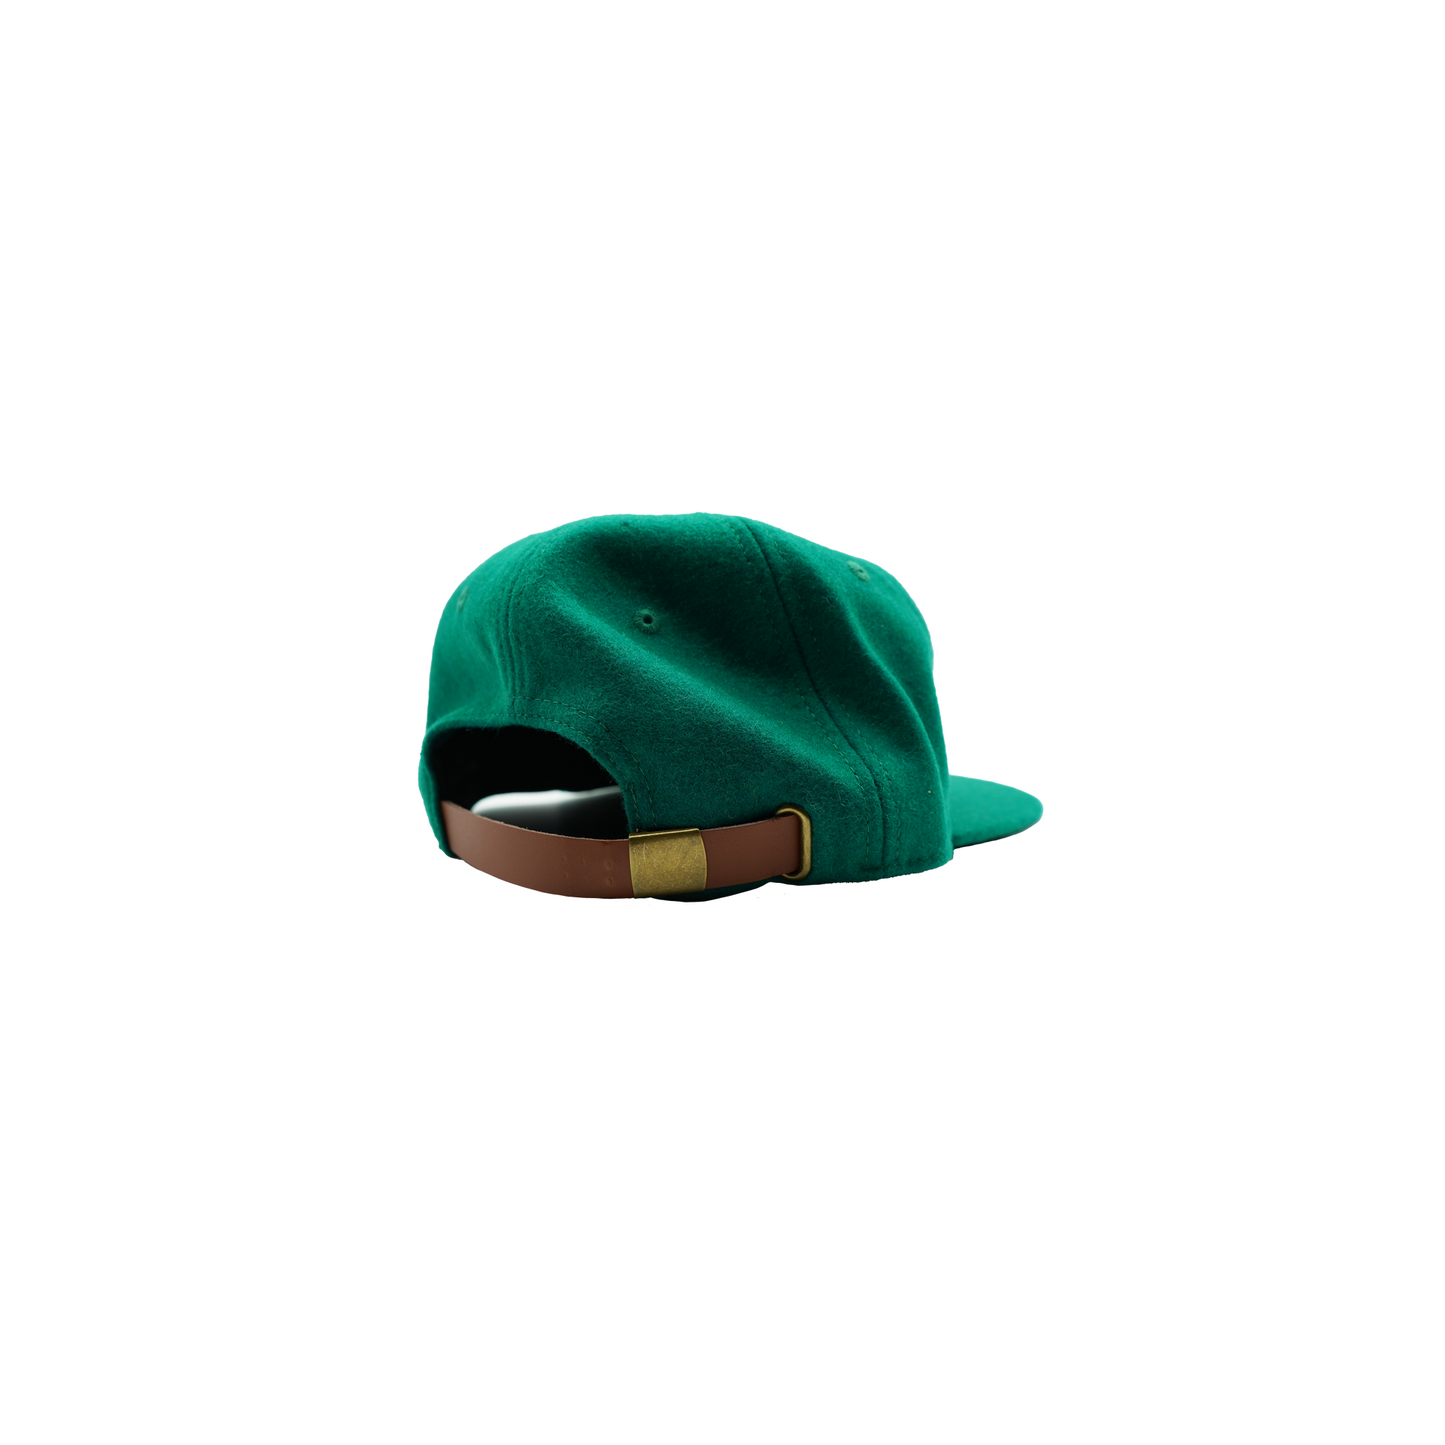 LA wool hat (green)